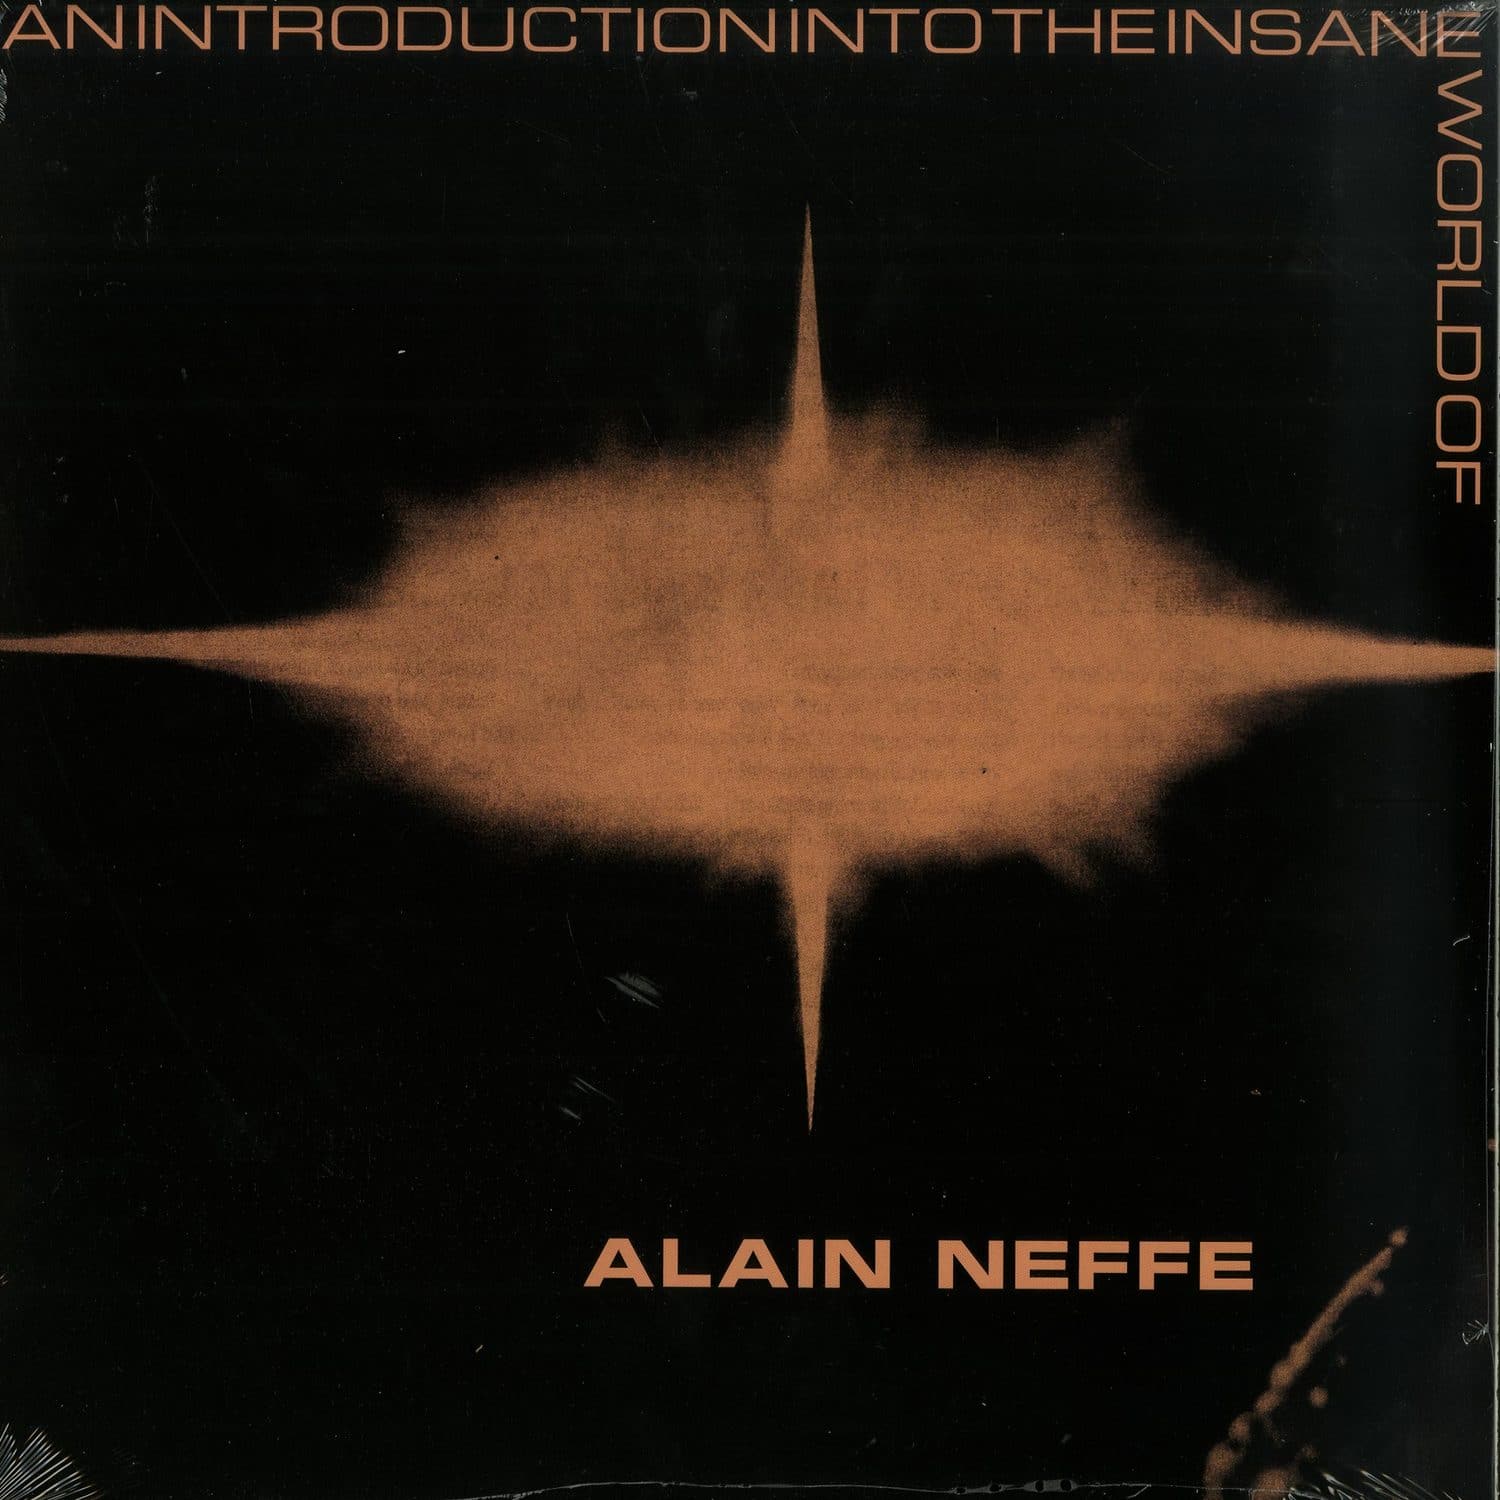 Alain Neffe - AN INTRODUCTION INTO THE INSANE WORLD OF ALAIN FEFFE 